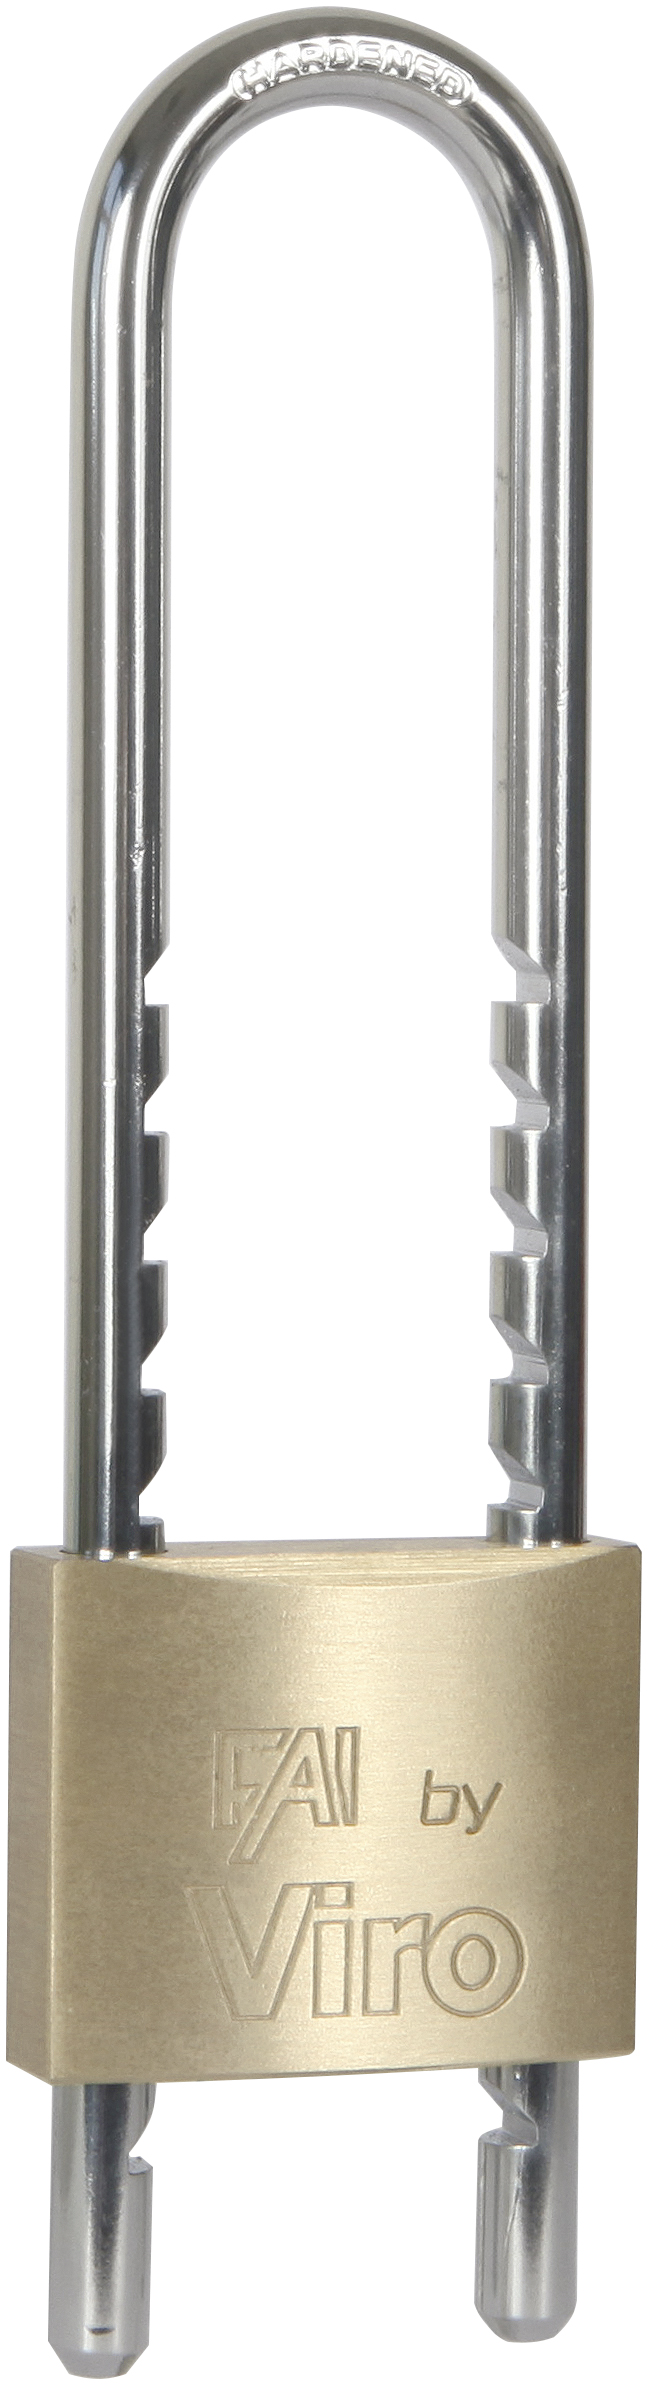 VIRO - Candado rectangular Fai by Viro con arco ajustable